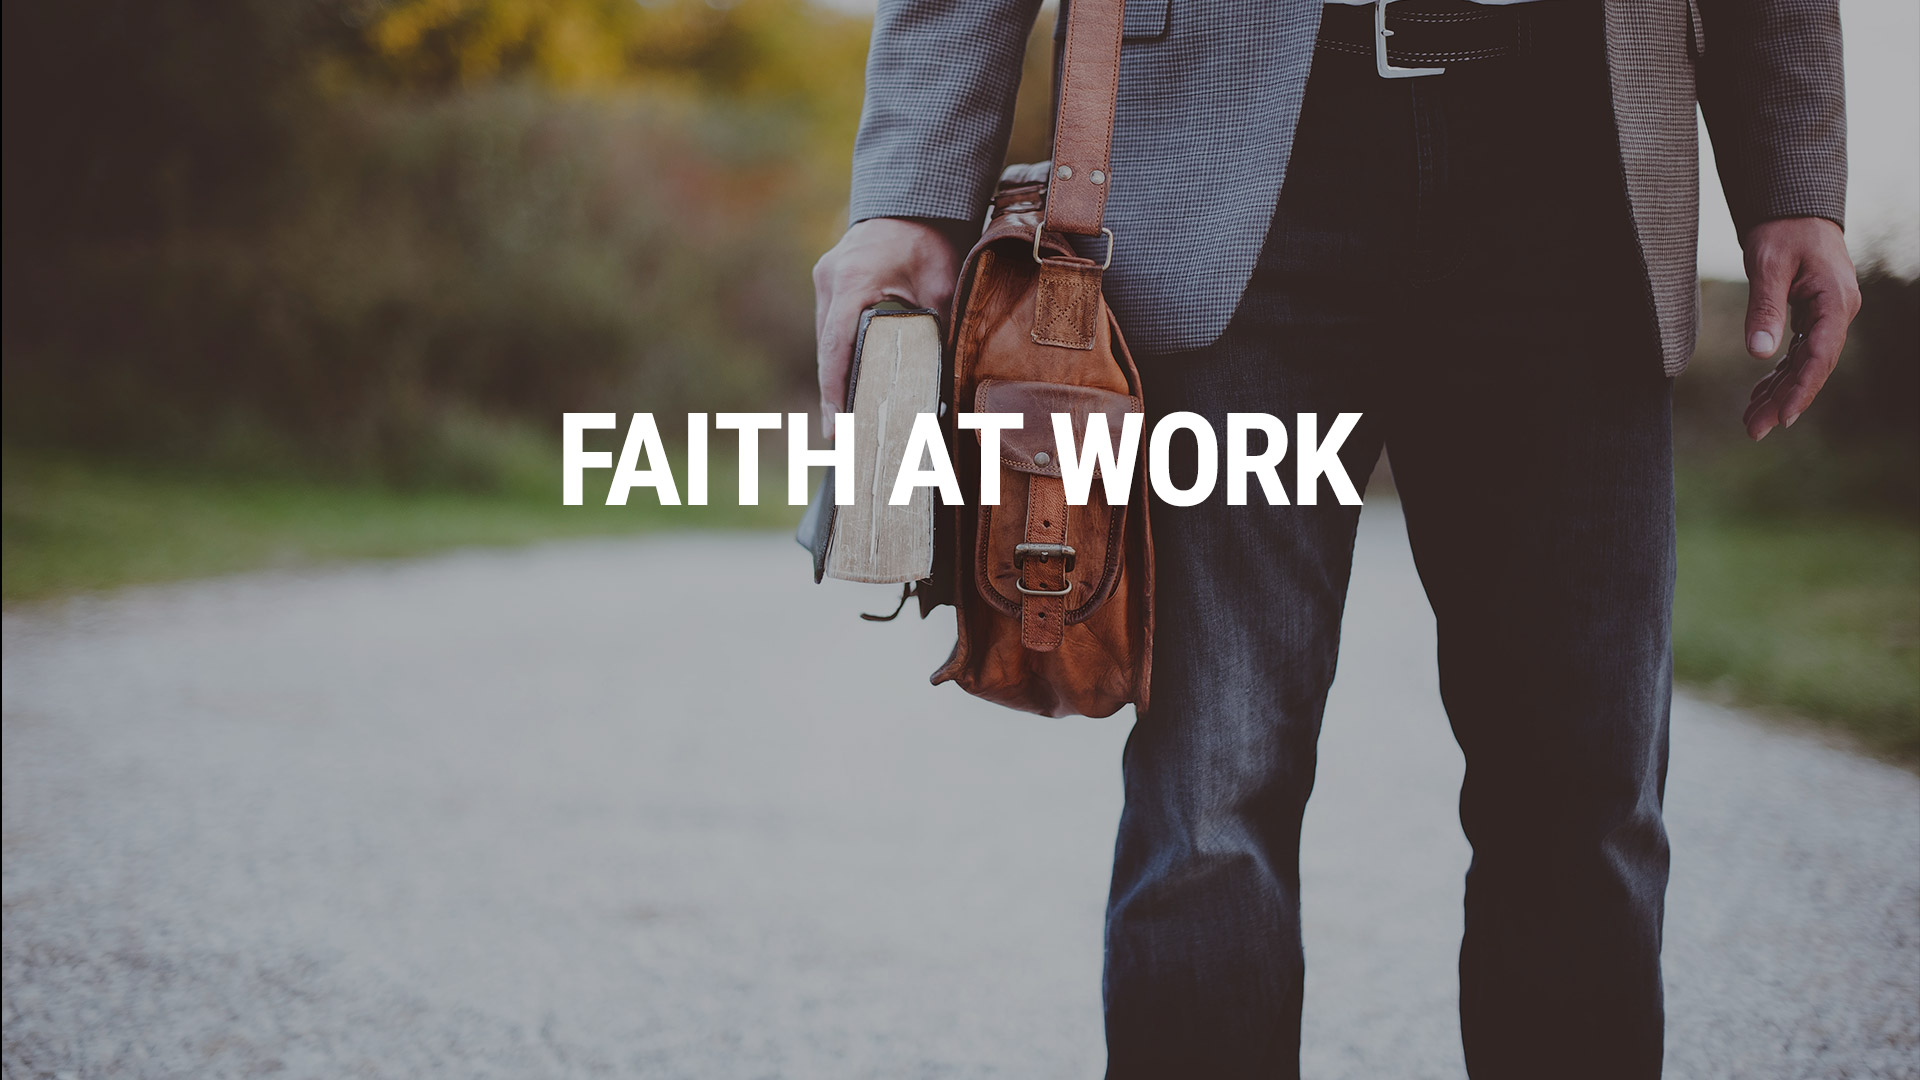 Faith at work